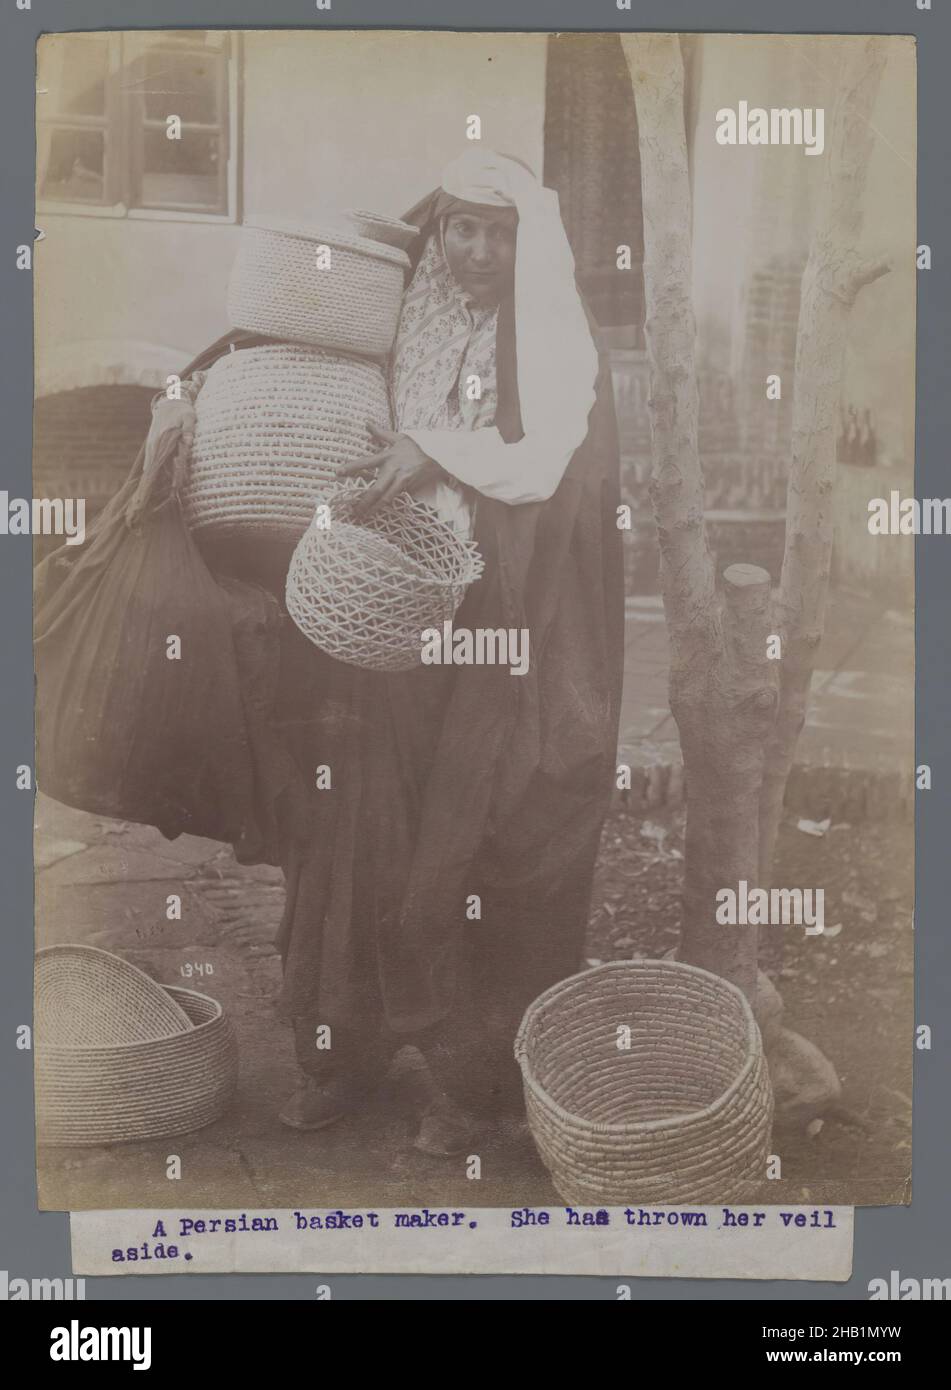 Frau, die Körbe trägt und den Schleier beiseite geworfen hat, eine von 274 Vintage-Fotografien, Silberalbumin-Fotografie, Ende 19th-Anfang 20th. Jahrhundert, Qajar, Qajar-Zeit, 8 3/16 x 6 3/16 Zoll, 20,8 x 15,7 cm, iranisch, Nahost, Persisch Stockfoto